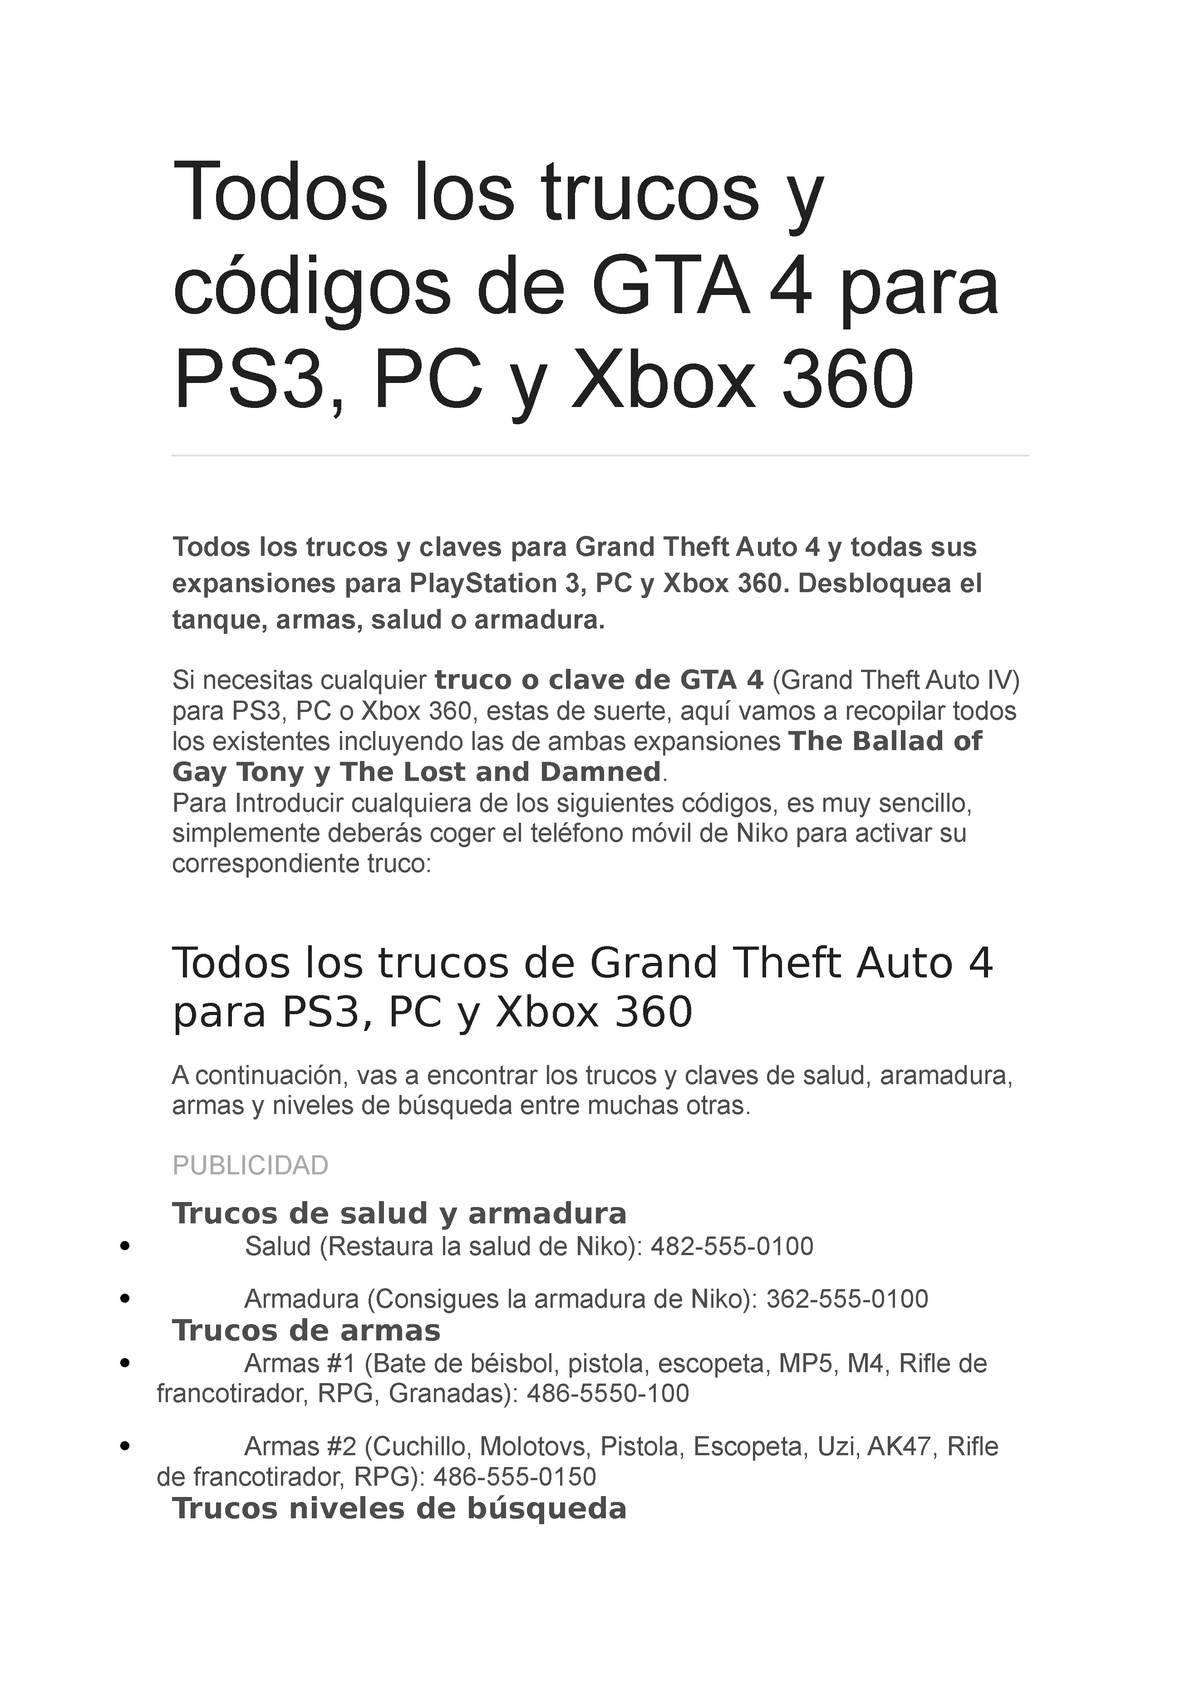 Paseo abajo carrera Trucos gta 4 - xdxxxxdddddd - Todos los trucos y códigos de GTA 4 para PS3,  PC y Xbox 360 Todos los - Studocu